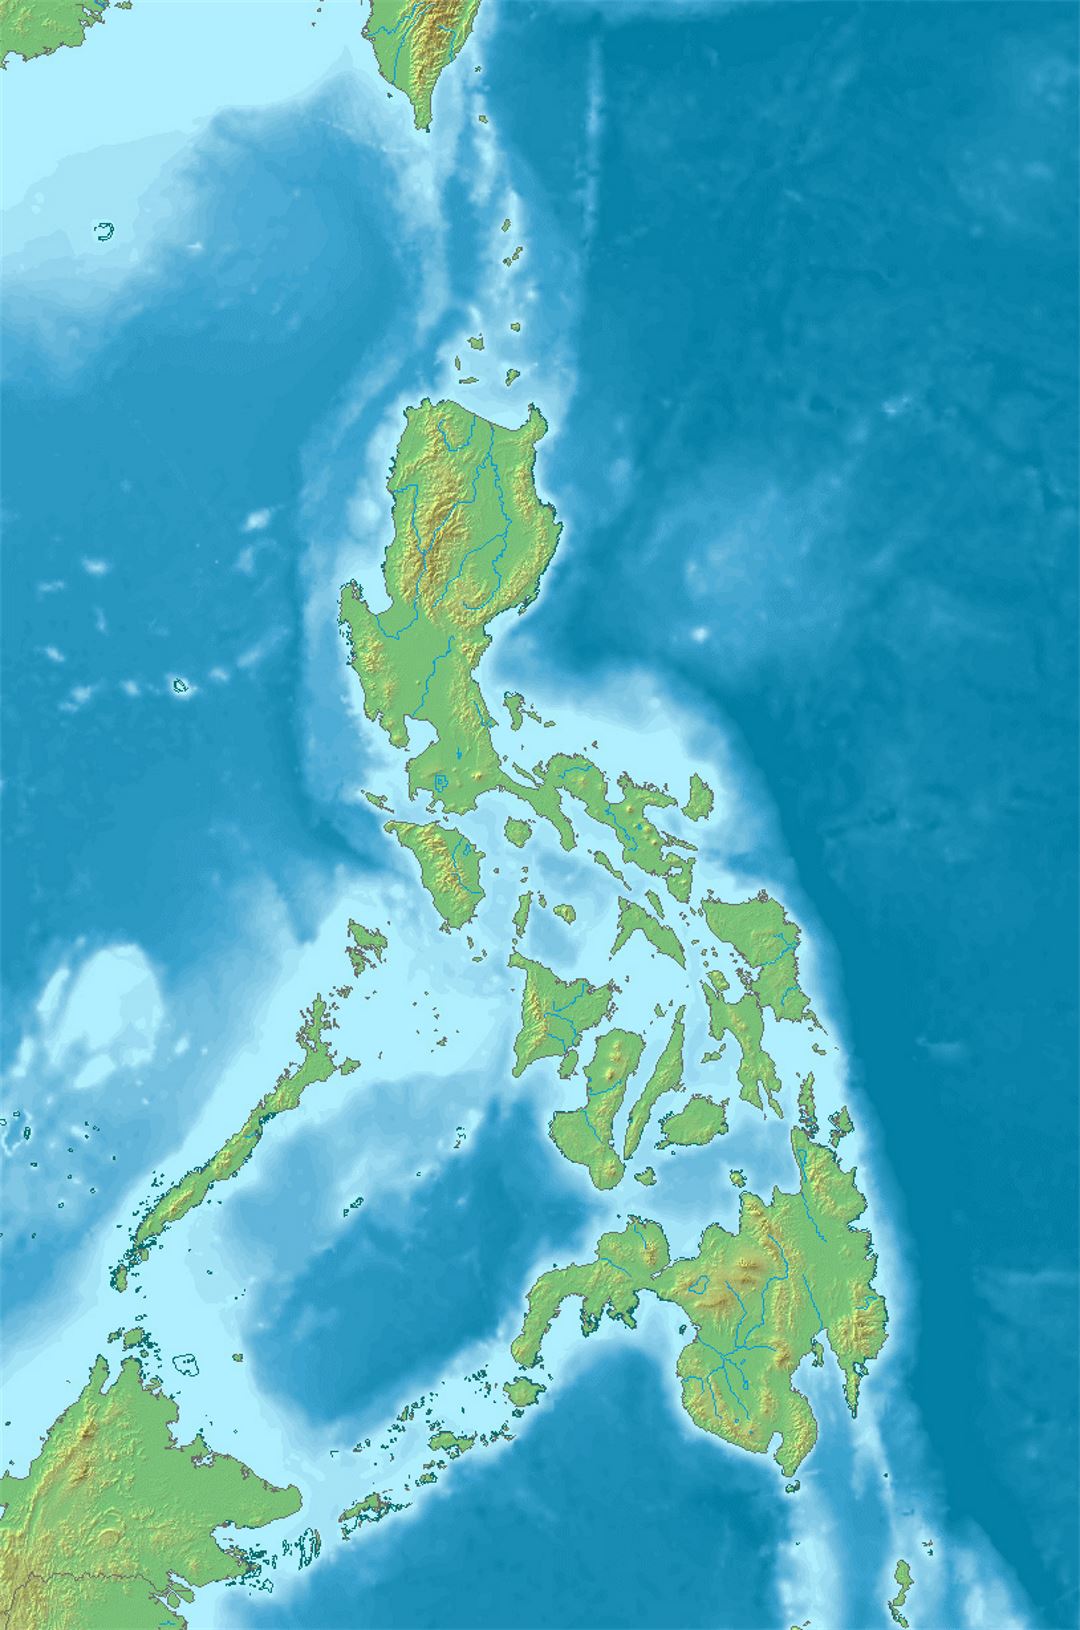 Detallado mapa en relieve de Filipinas